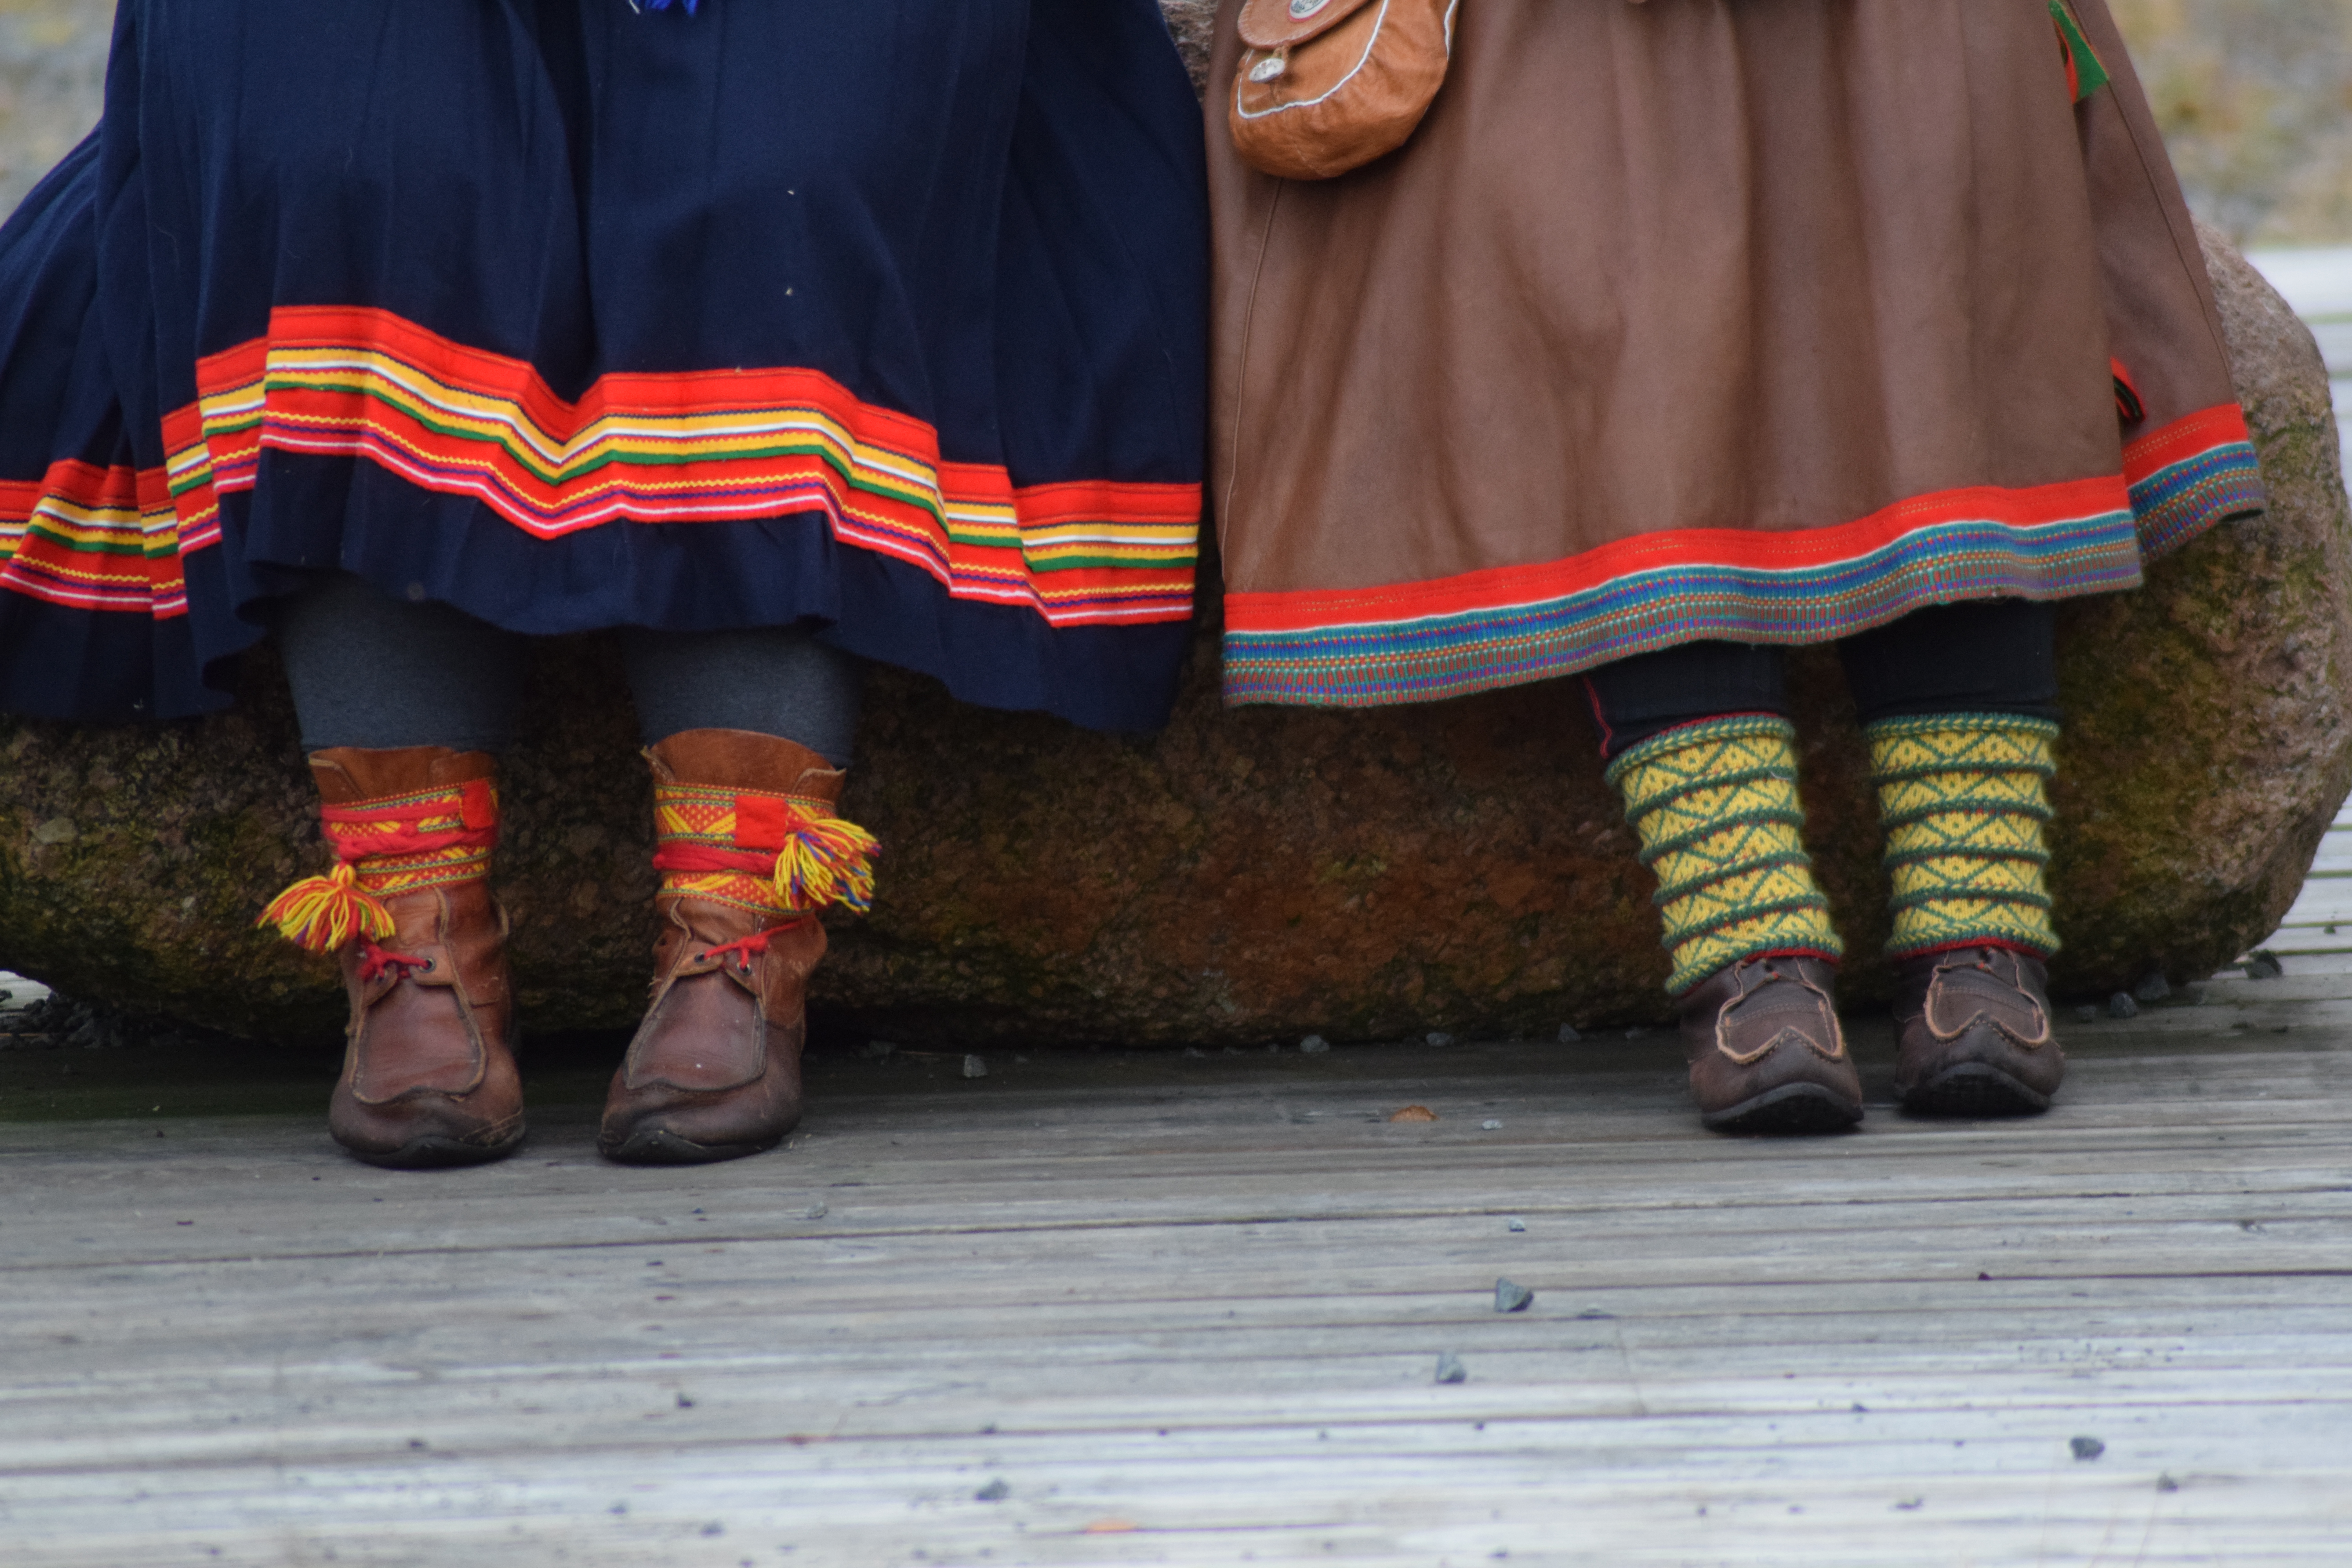 Två personer med samiska klädsel med fokus på skor